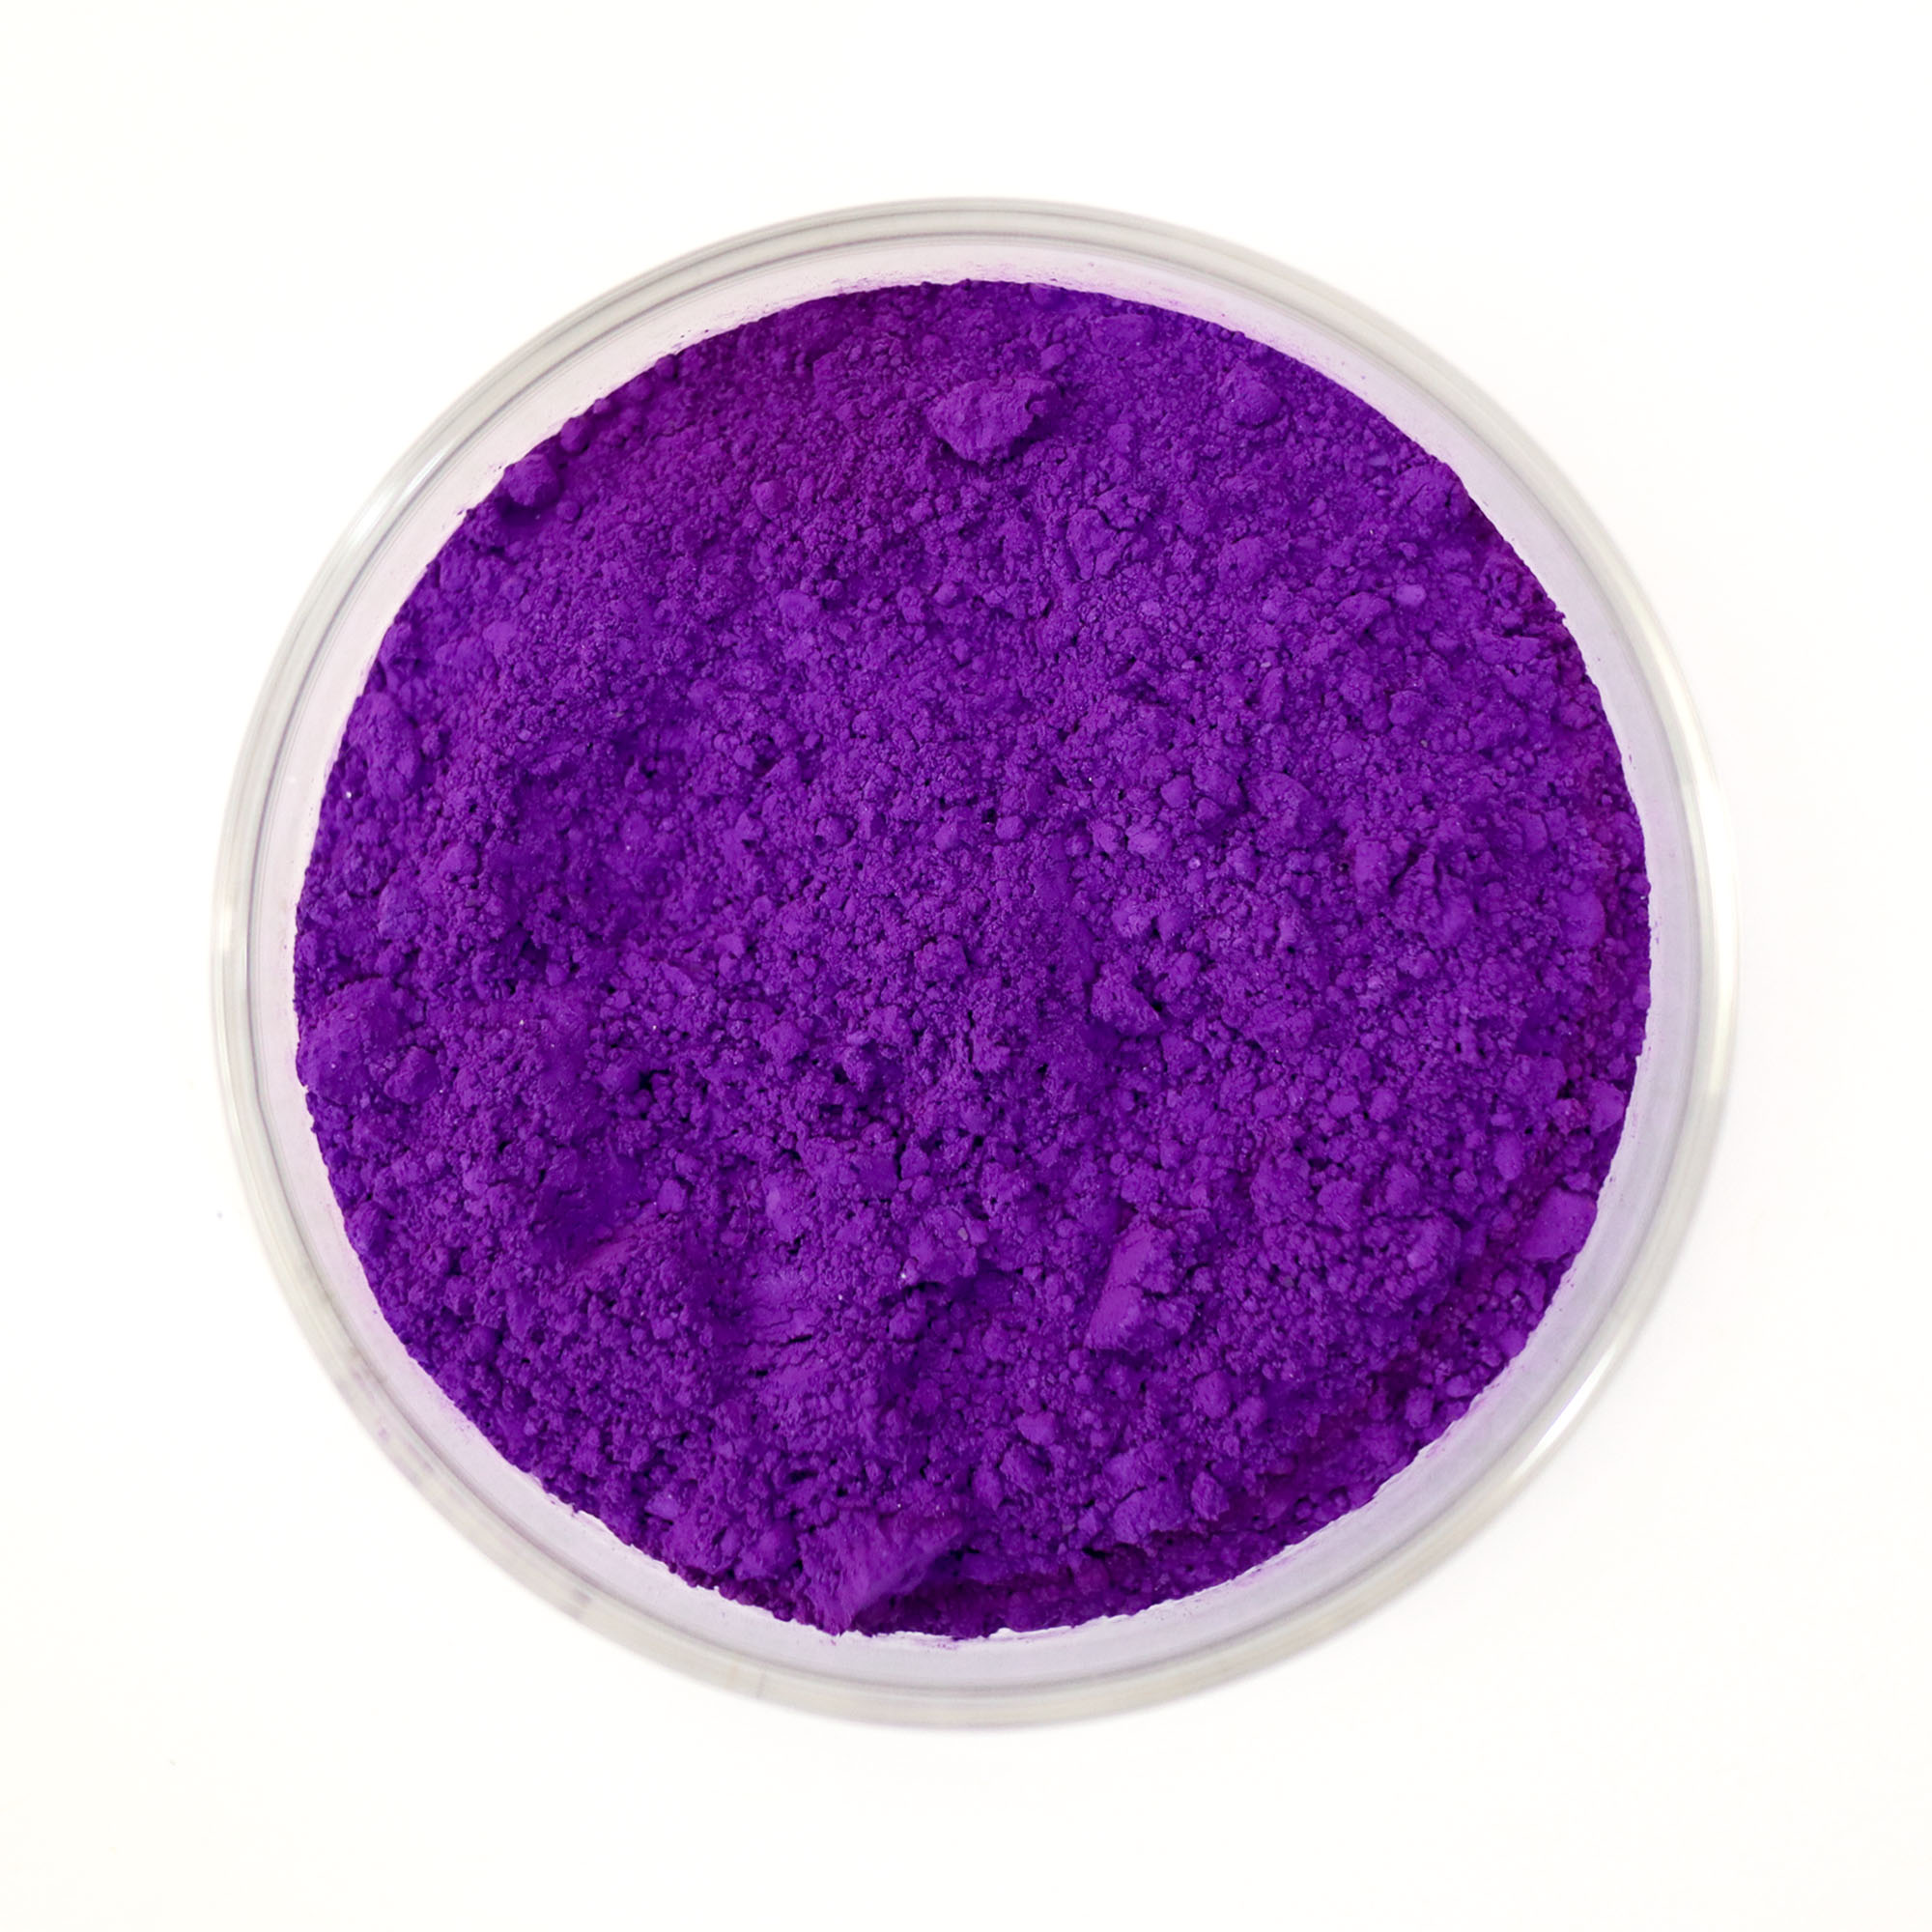 Genuine Manganese Violet